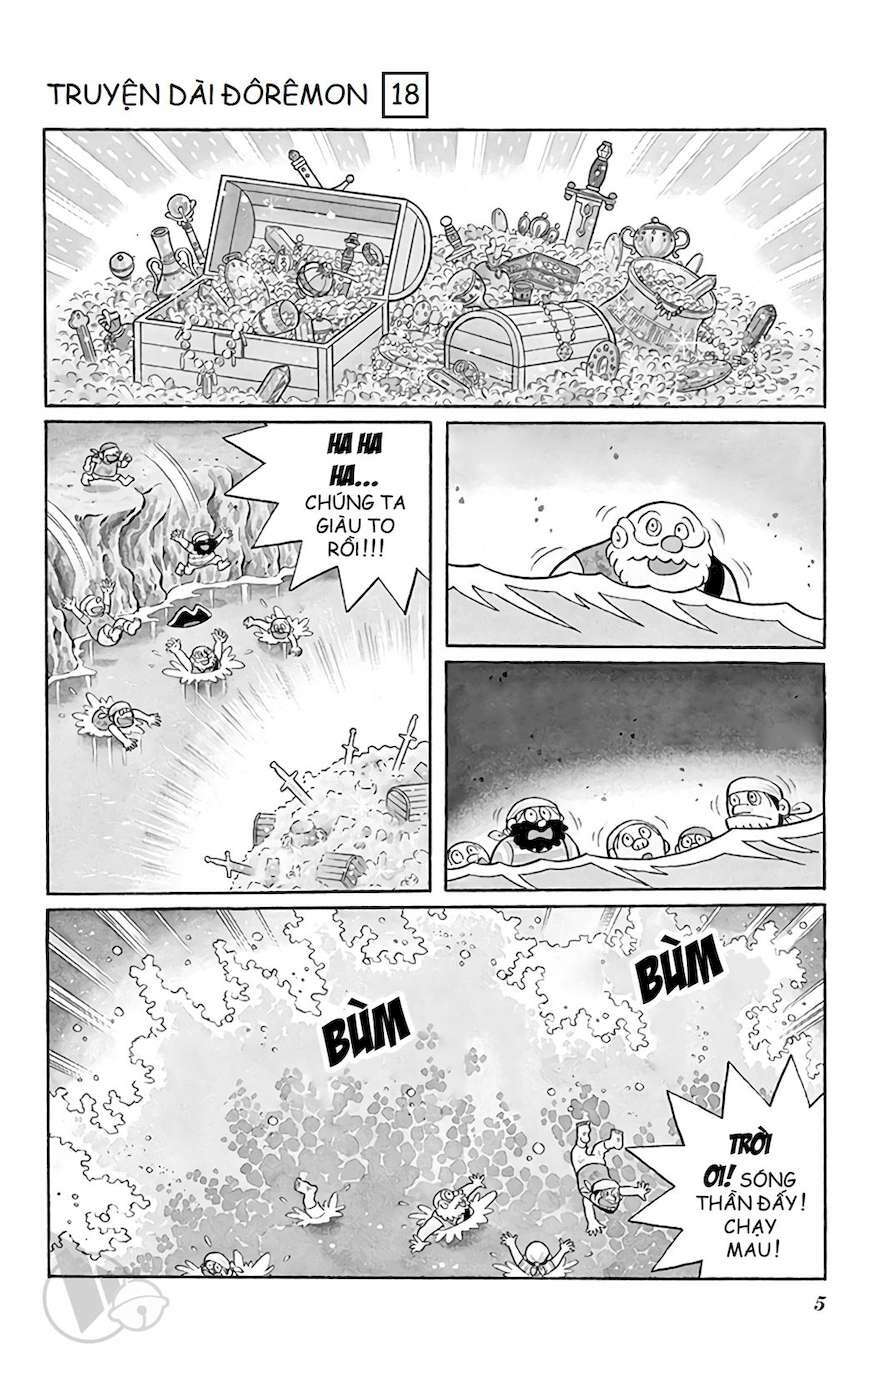 Truyện Tranh Doraemon: Cuộc Phiêu Lưu Đến Đảo Giấu Vàng trang 4